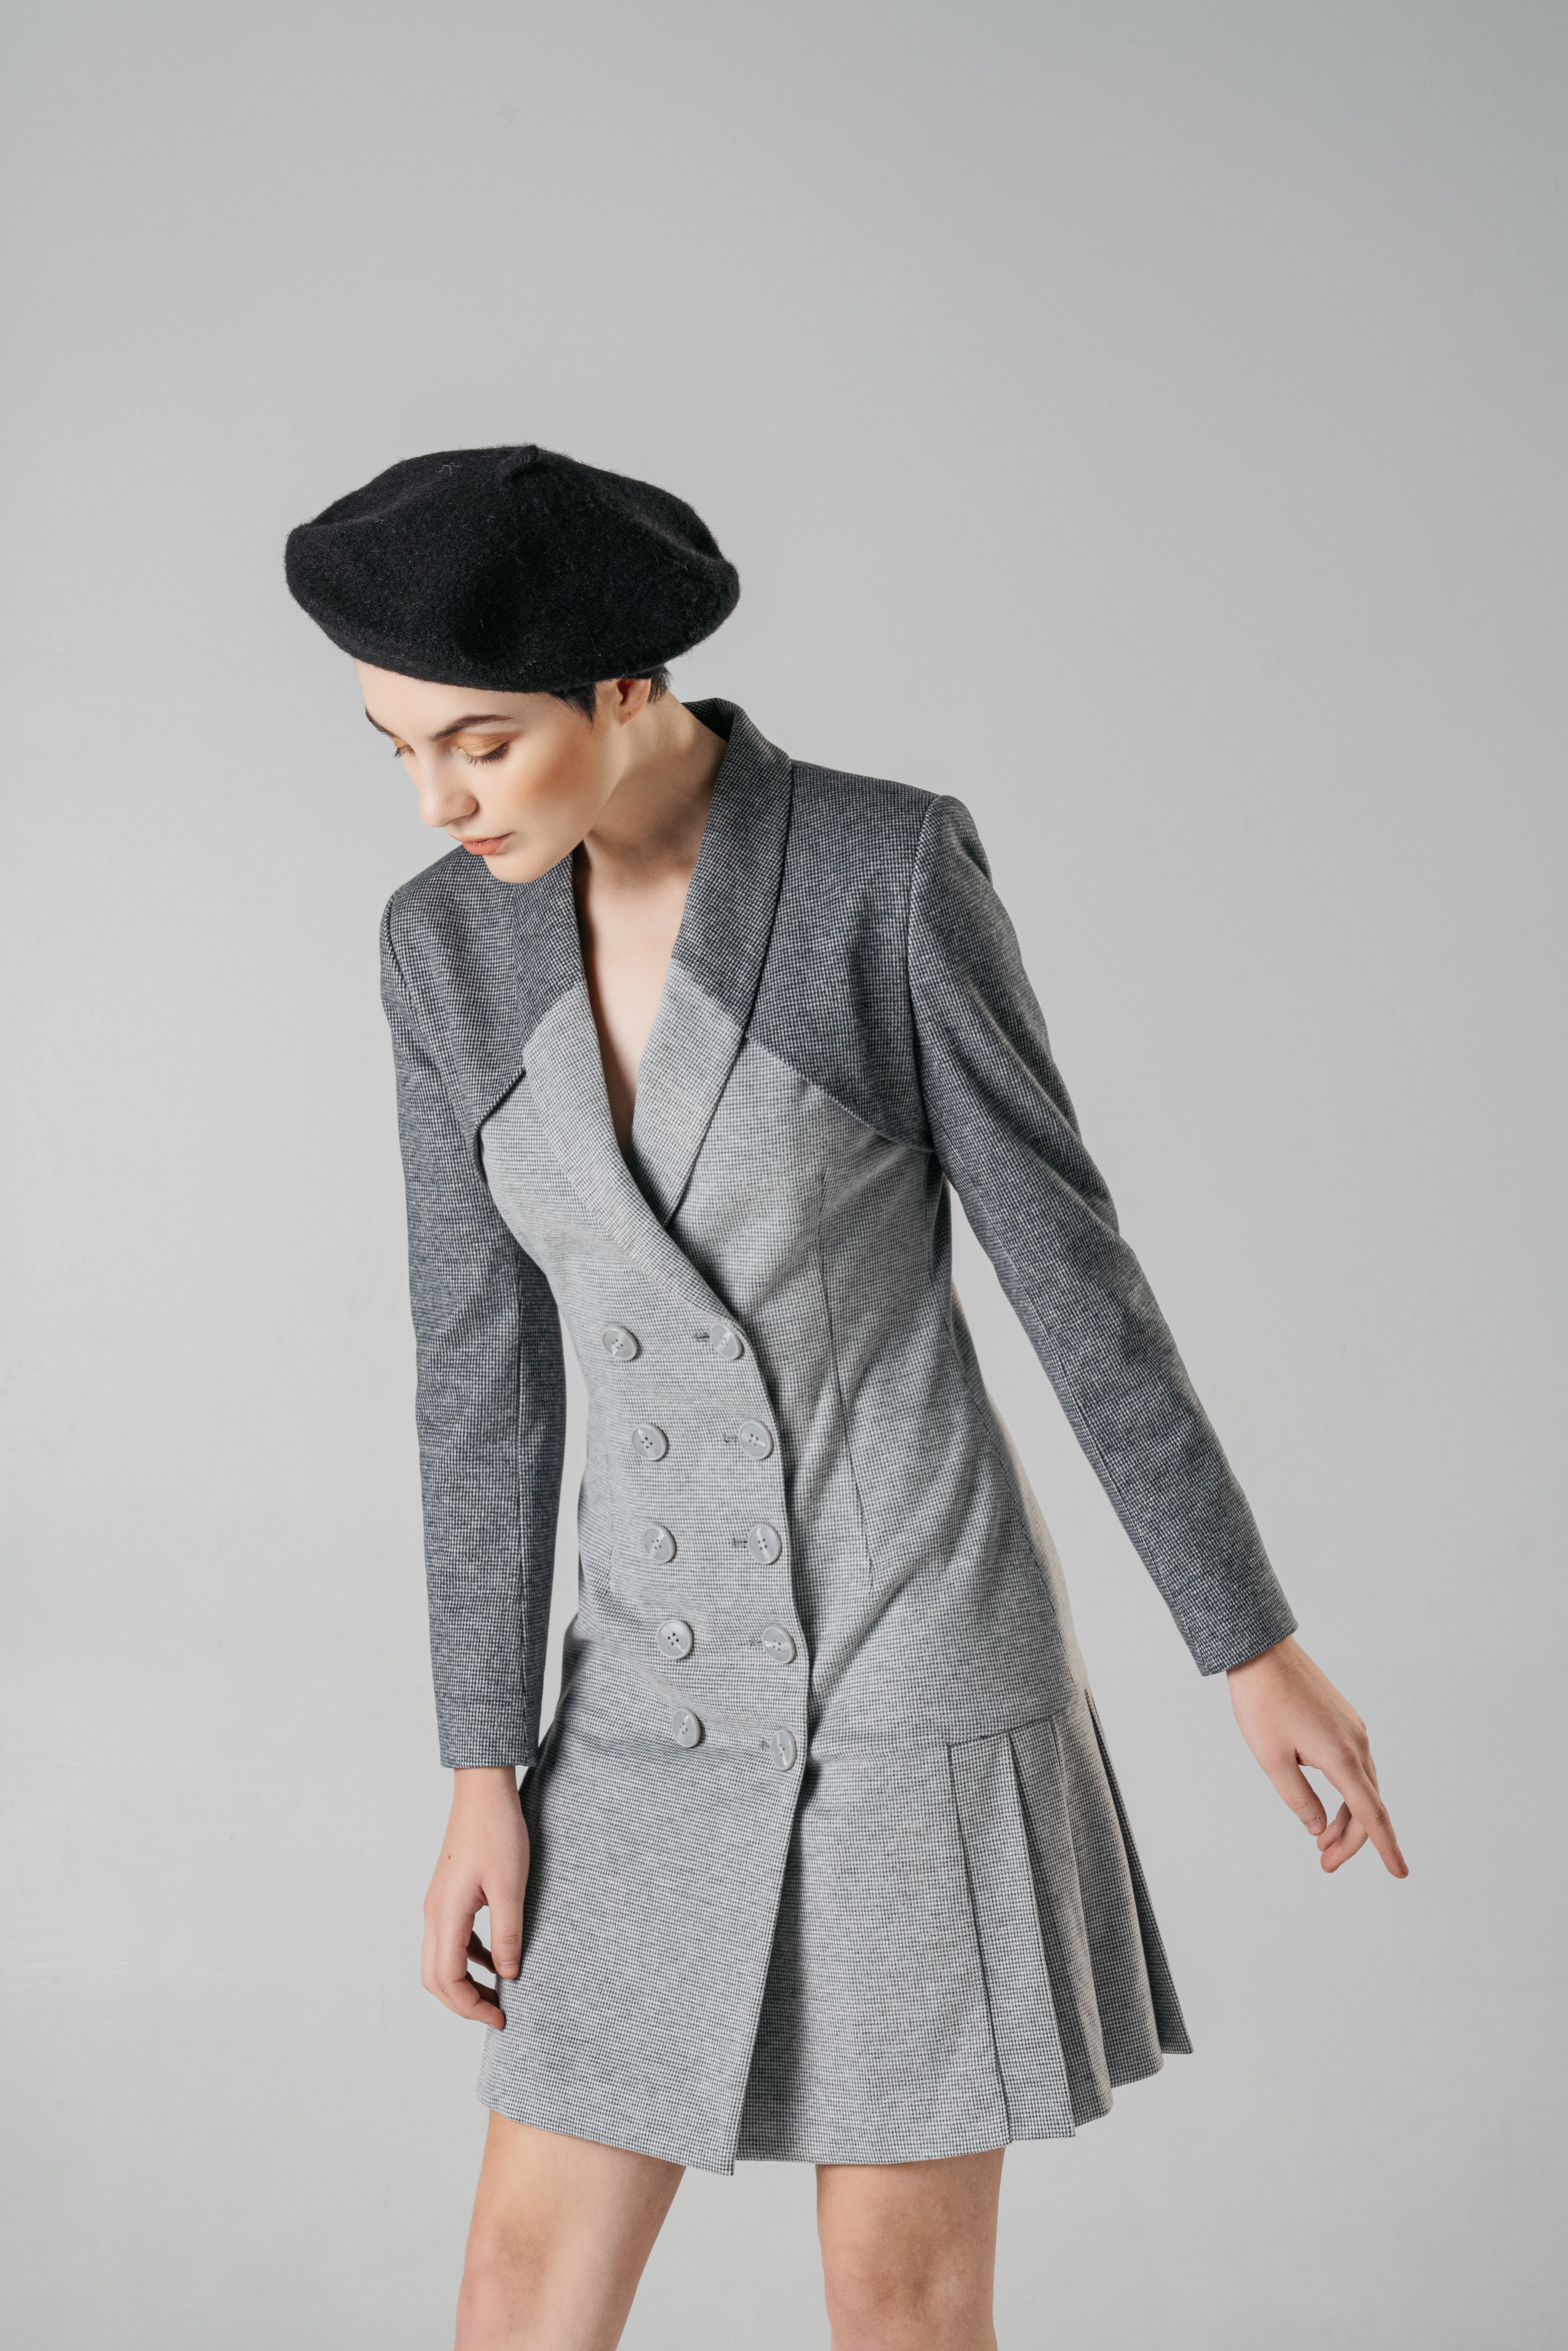 Gradient gray suit pleated dress - By Quaint